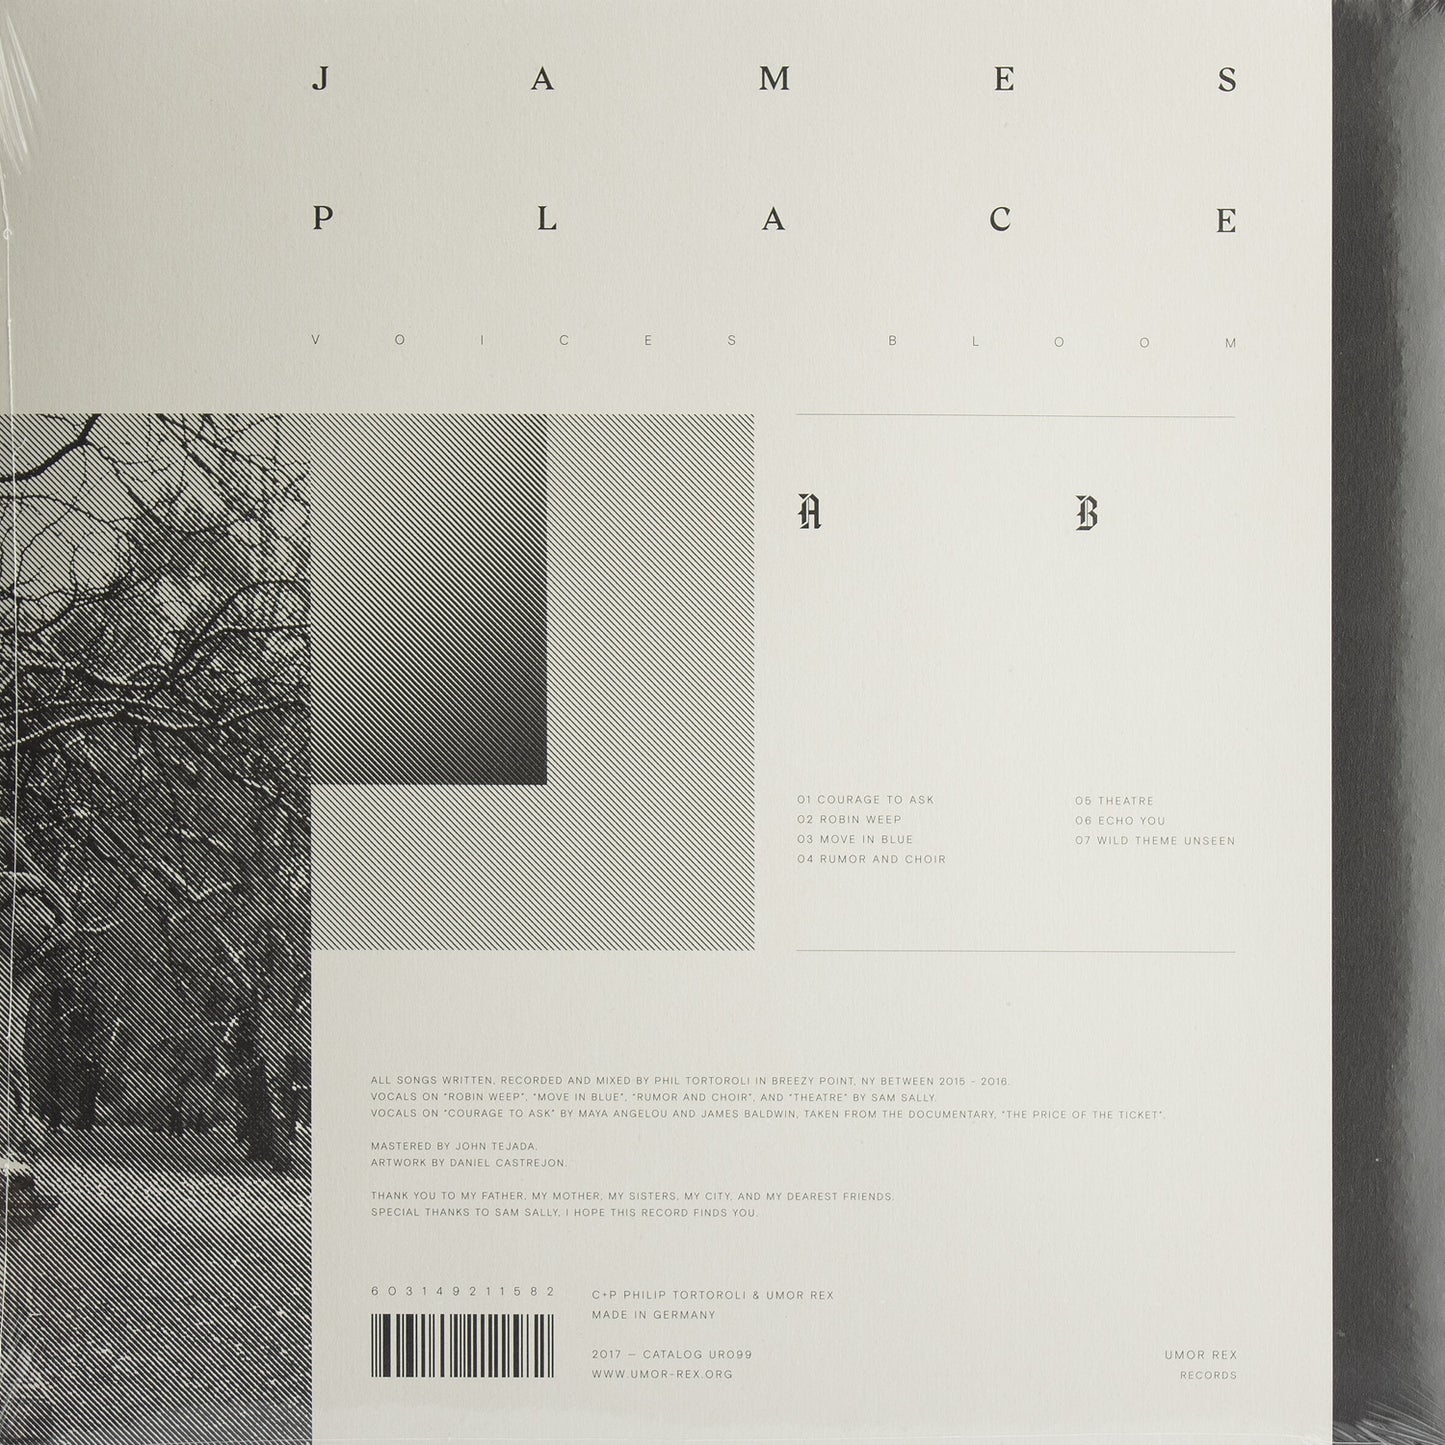 LP / JAMES PLACE — Voices Bloom